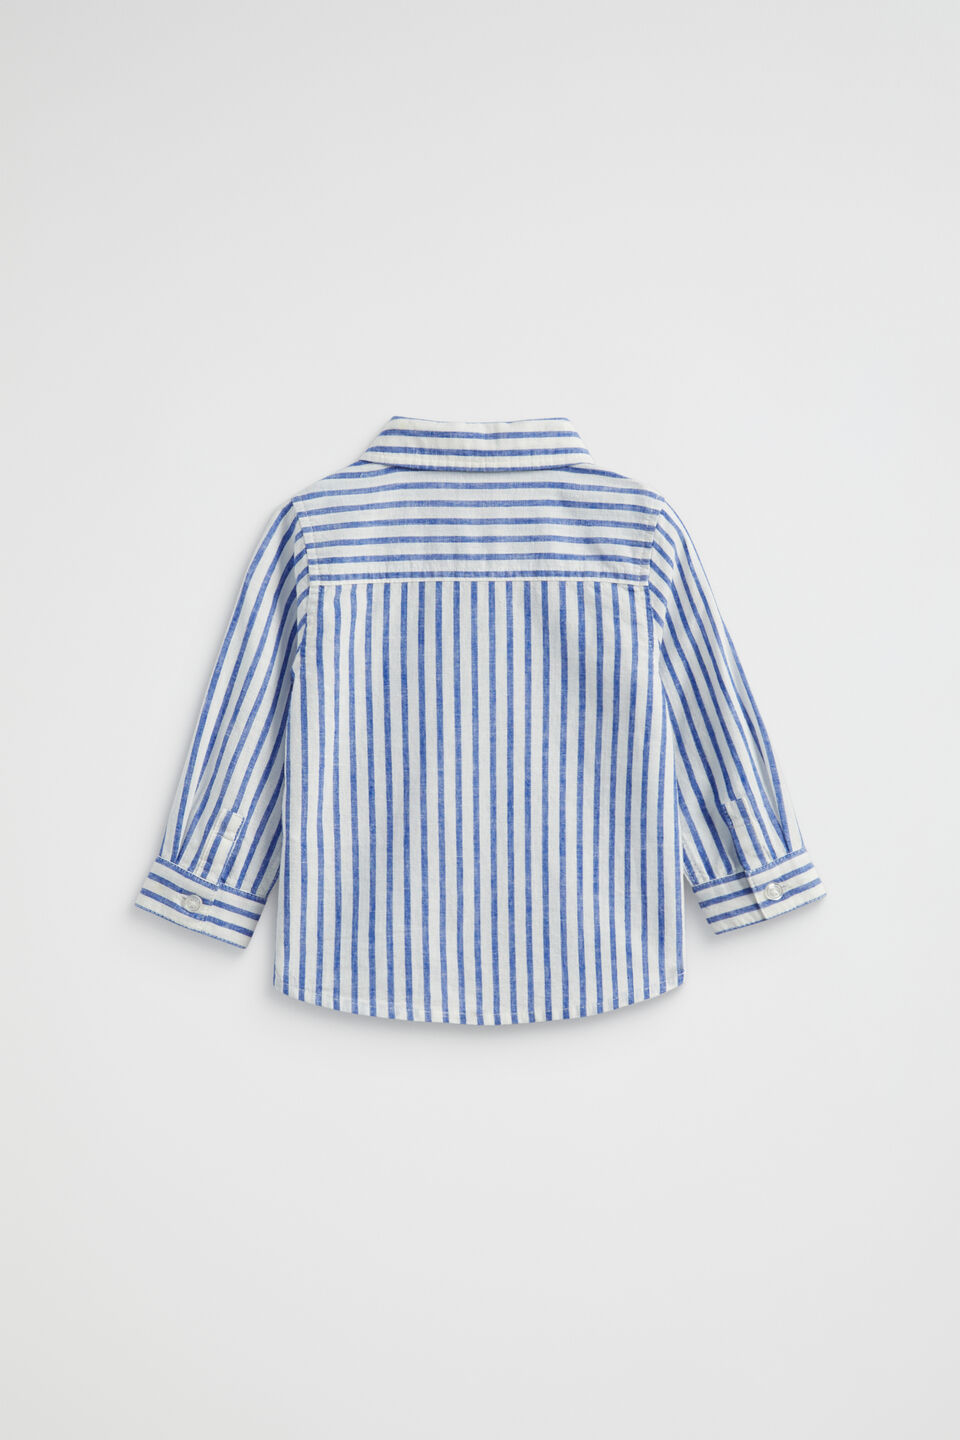 Stripe Linen Shirt  Cobalt Blue